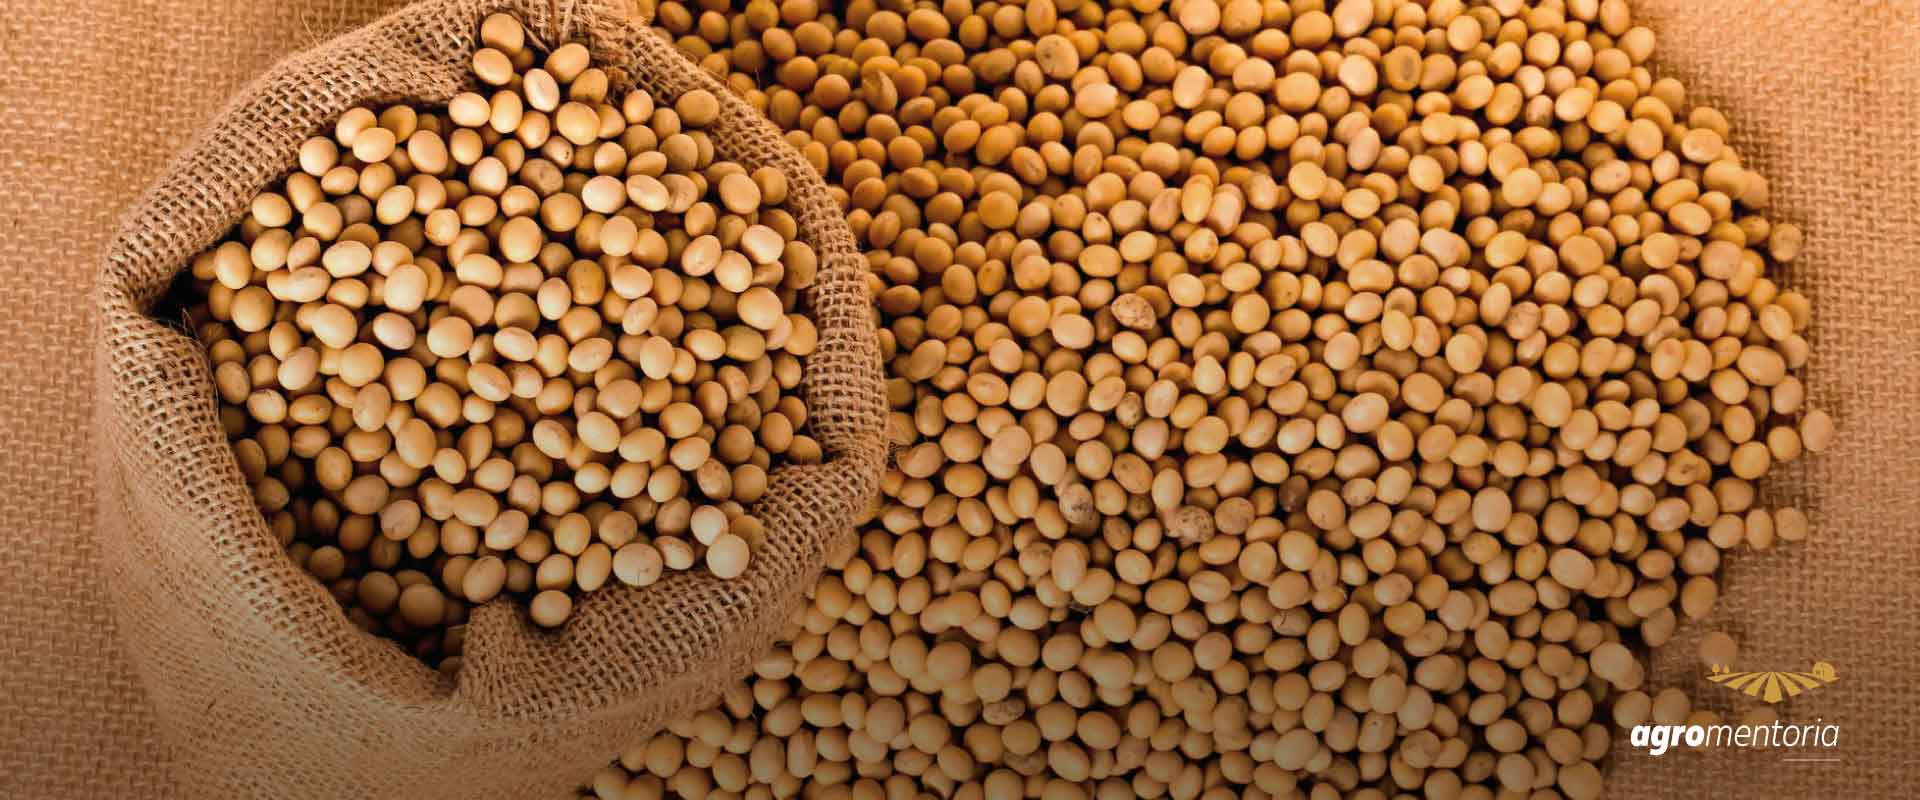 Cidade goiana estima colheita média de 62 sacas de soja por hectare